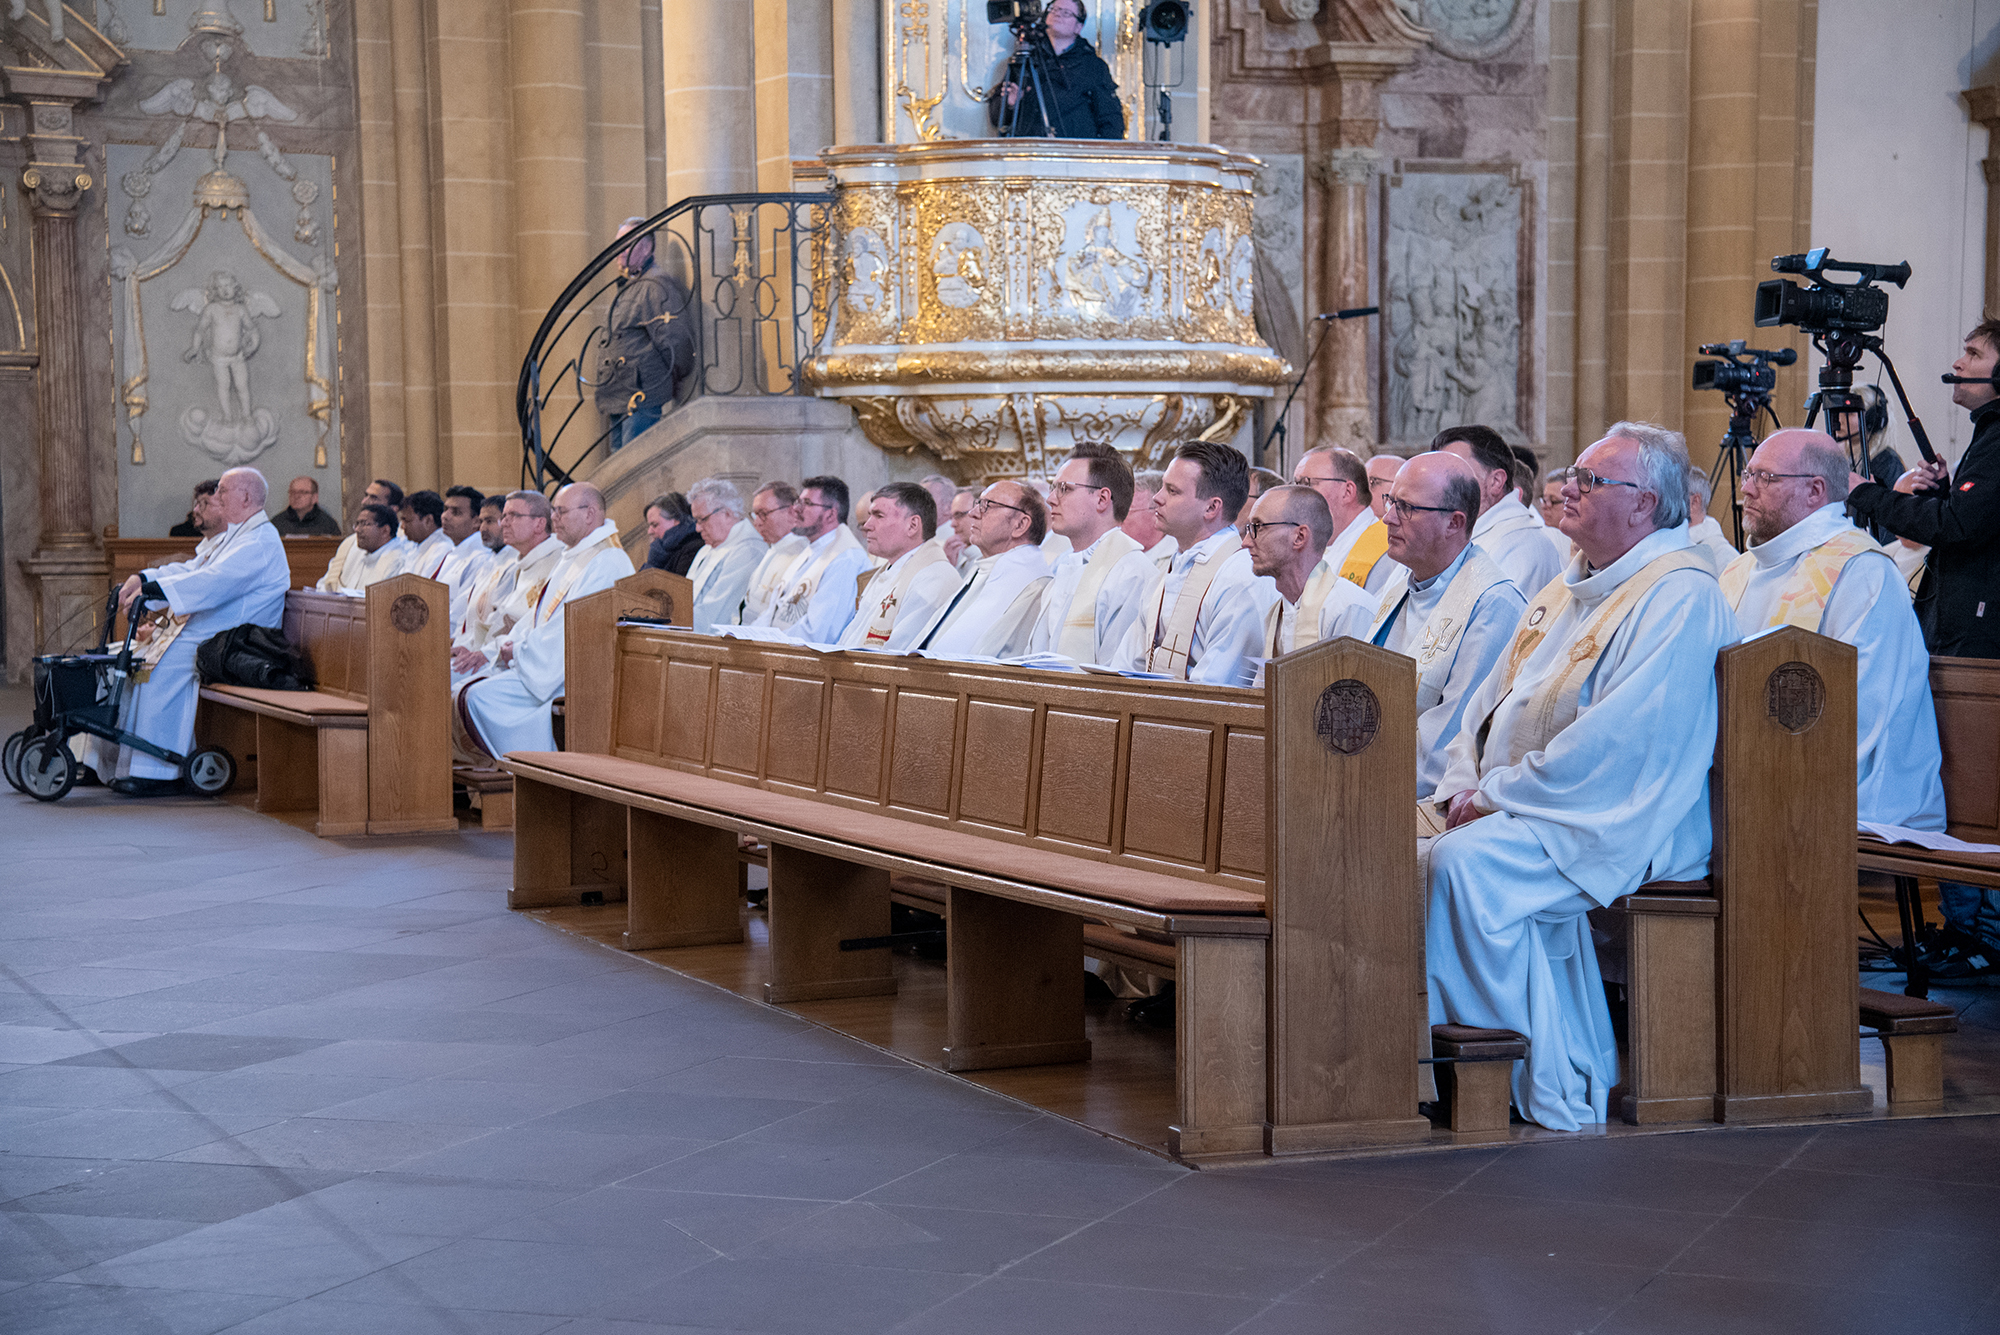 Diözesanadministrator ermutigt zum priesterlichen Dienst. Chrisam-Messe im Paderborner Dom mit Erneuerung des Weiheversprechens und Weihe der heiligen Öle